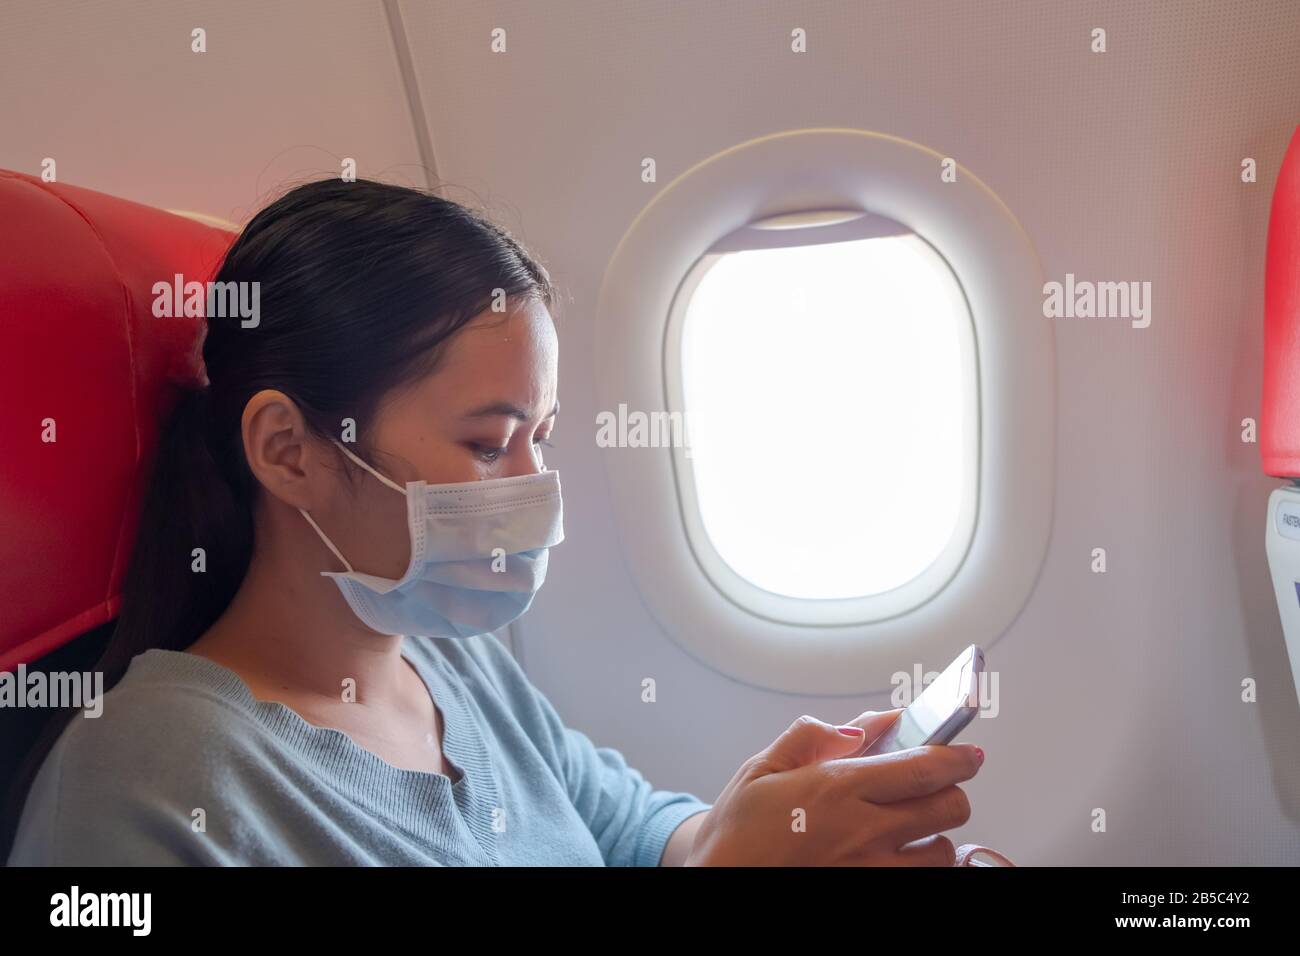 Asiatische Mädchen verwenden eine Schutzmaske für Coronavirus oder Kovid 19 im Flughafen. Thailändische Dame, die mit ihrem Telefon im Flugzeug spielt. Stockfoto